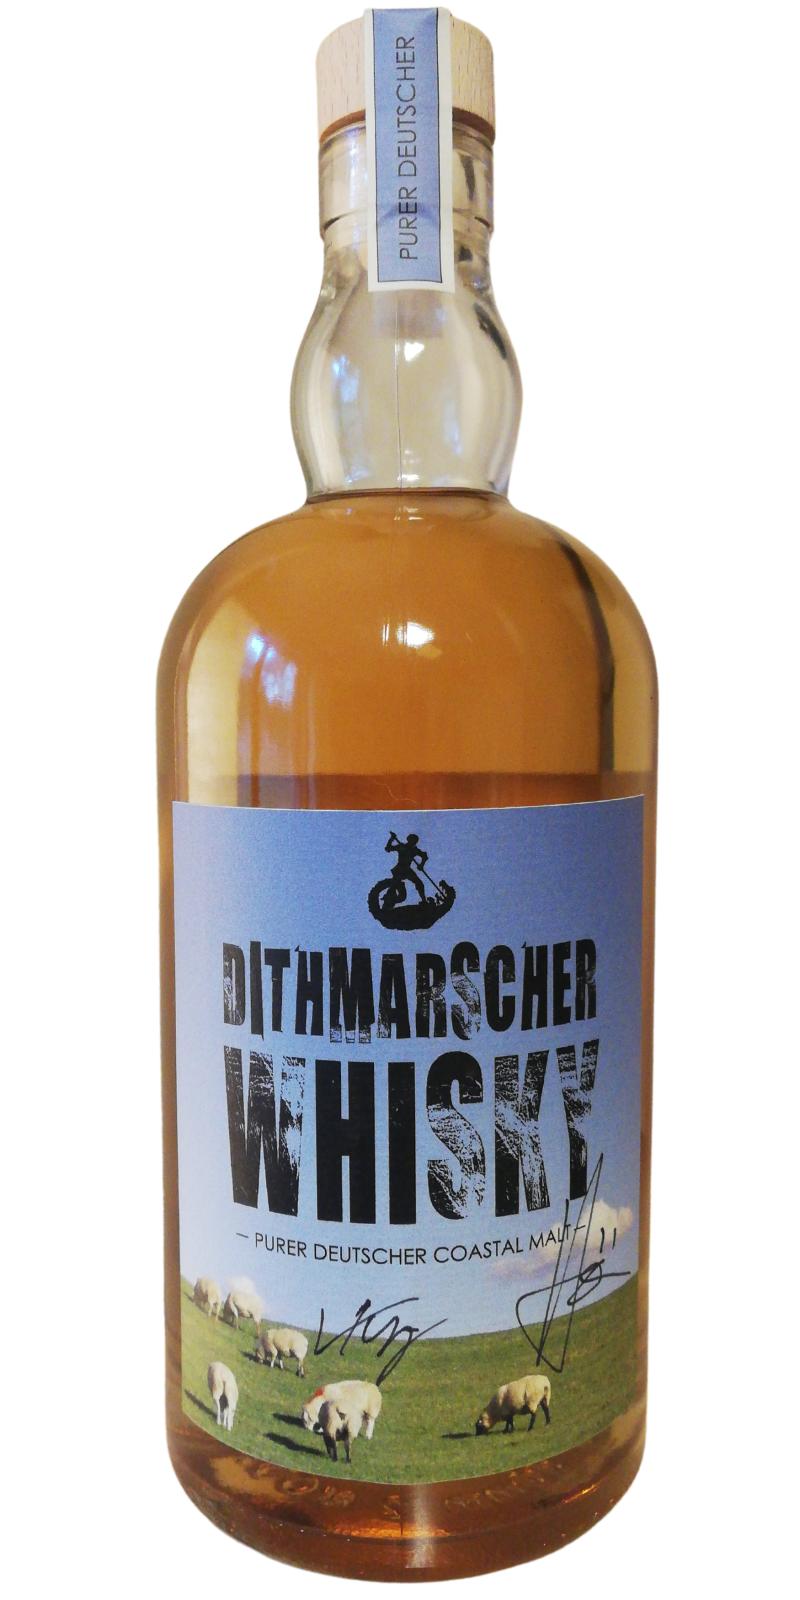 Dithmarscher Whisky Purer Deutscher Coastal Malt 49% 700ml